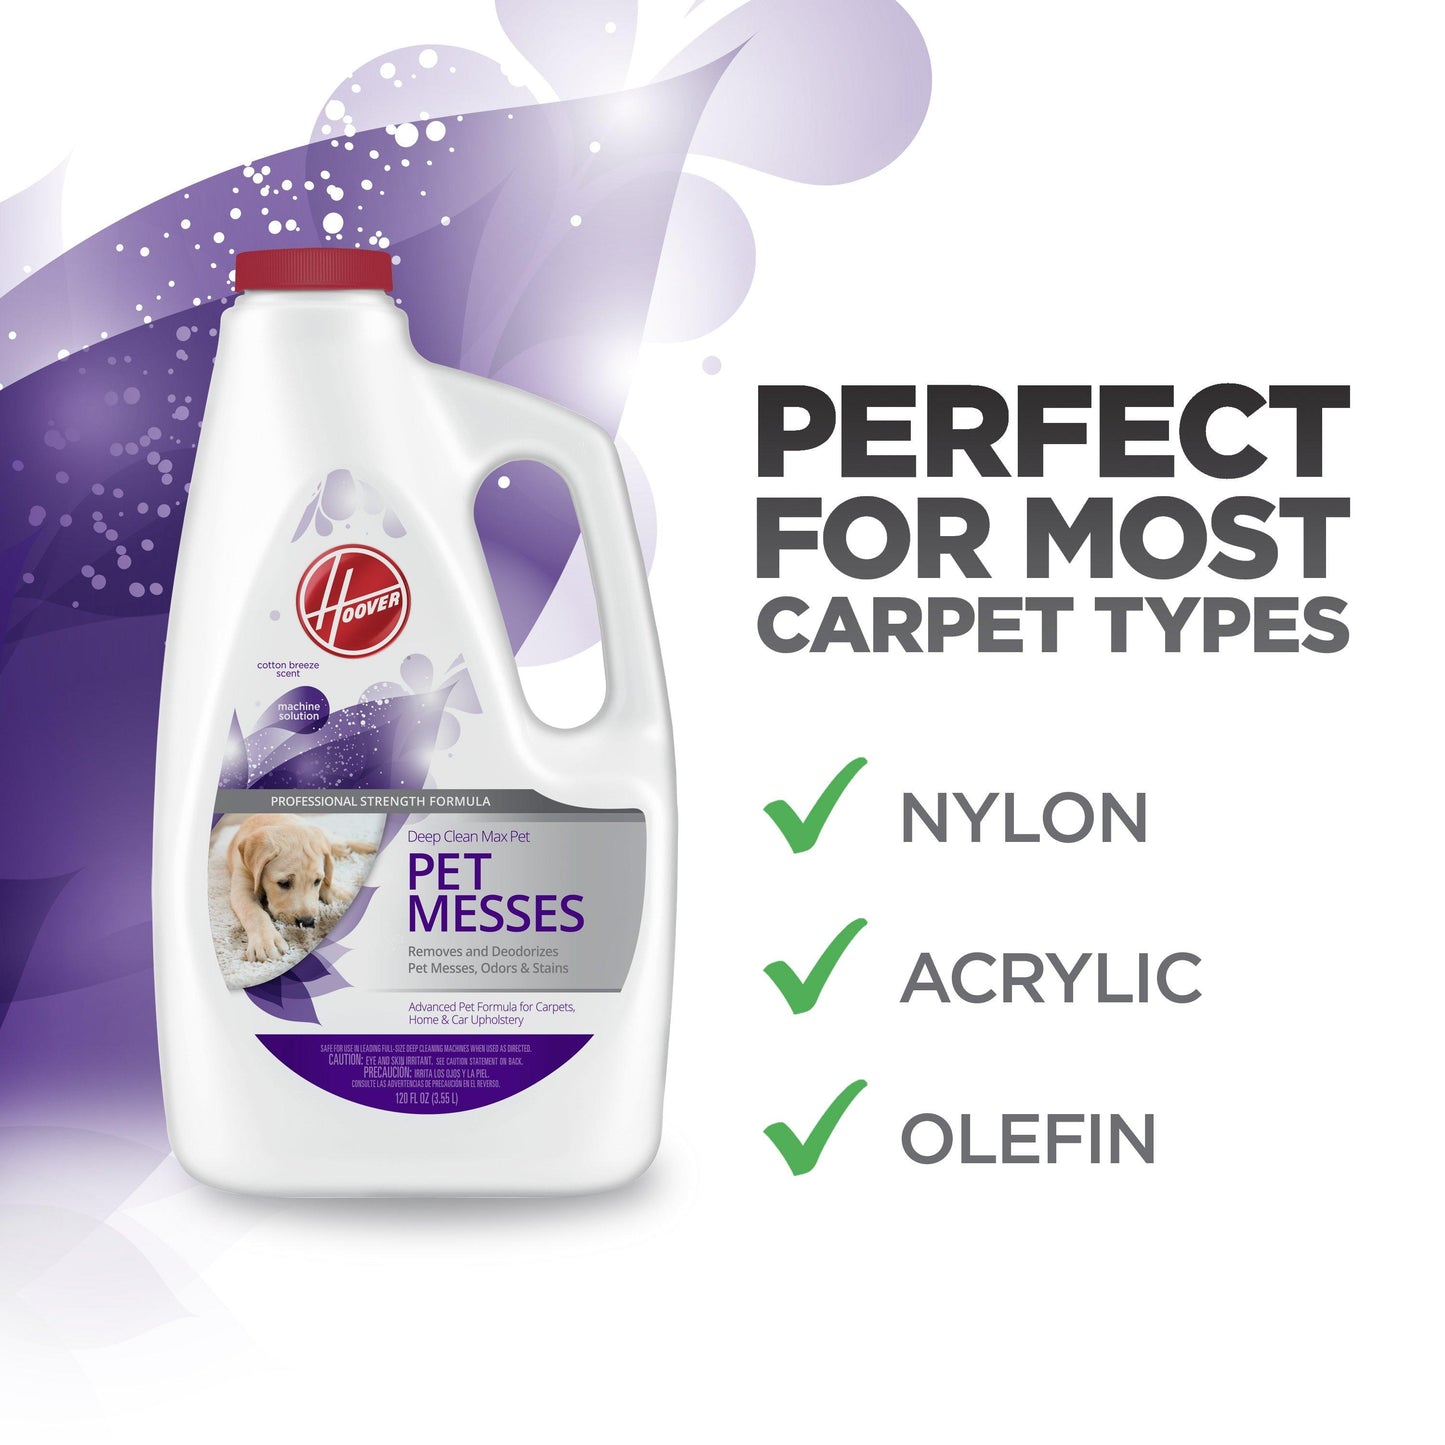 Deep Clean Max Pet - Pet Messes Carpet Cleaning Solution (120Oz)